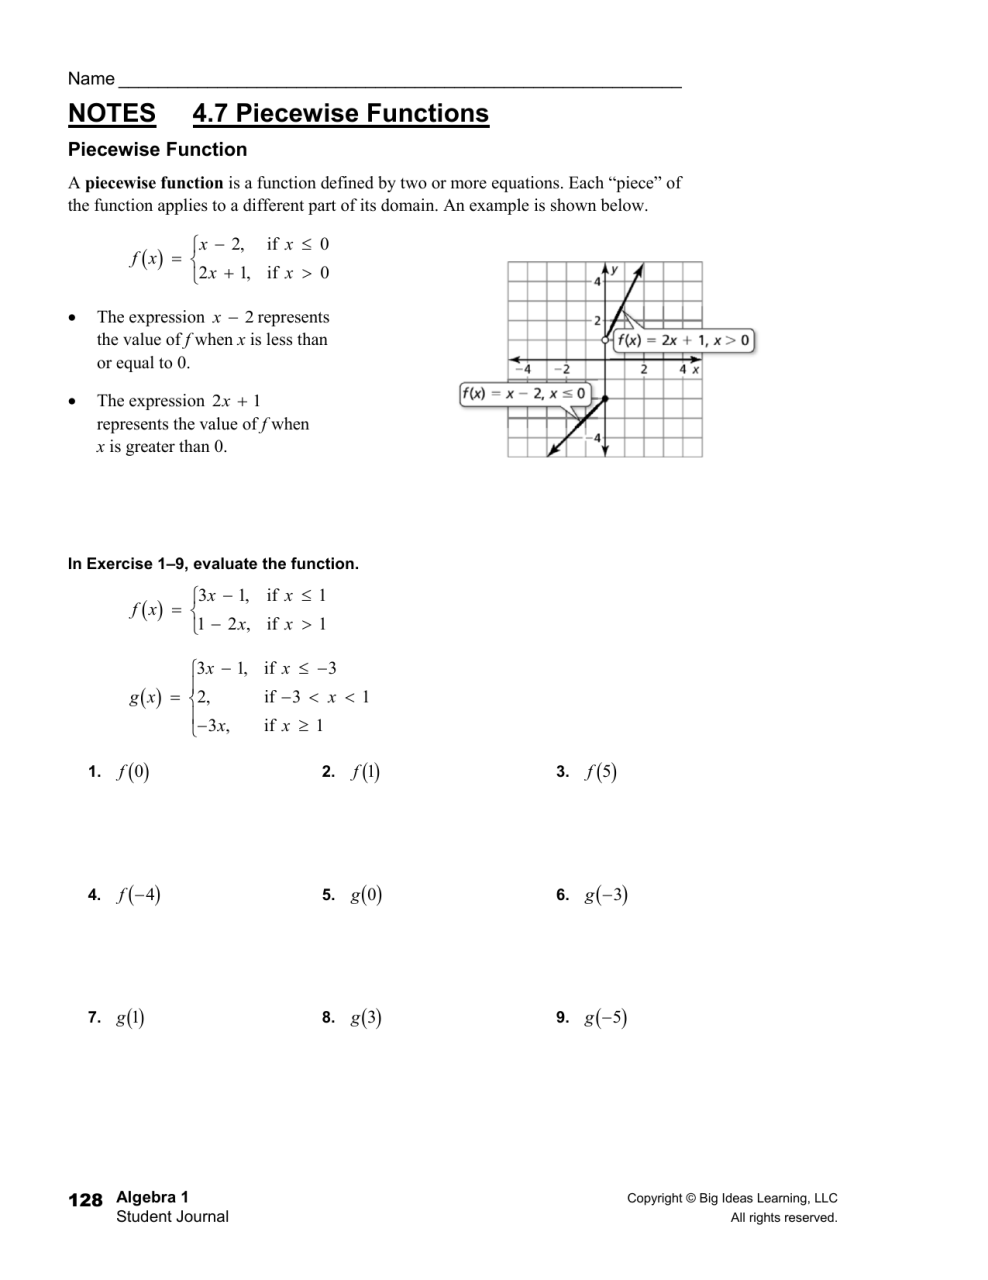 3.3 Piecewise Functions Worksheet Answers Algebra 2